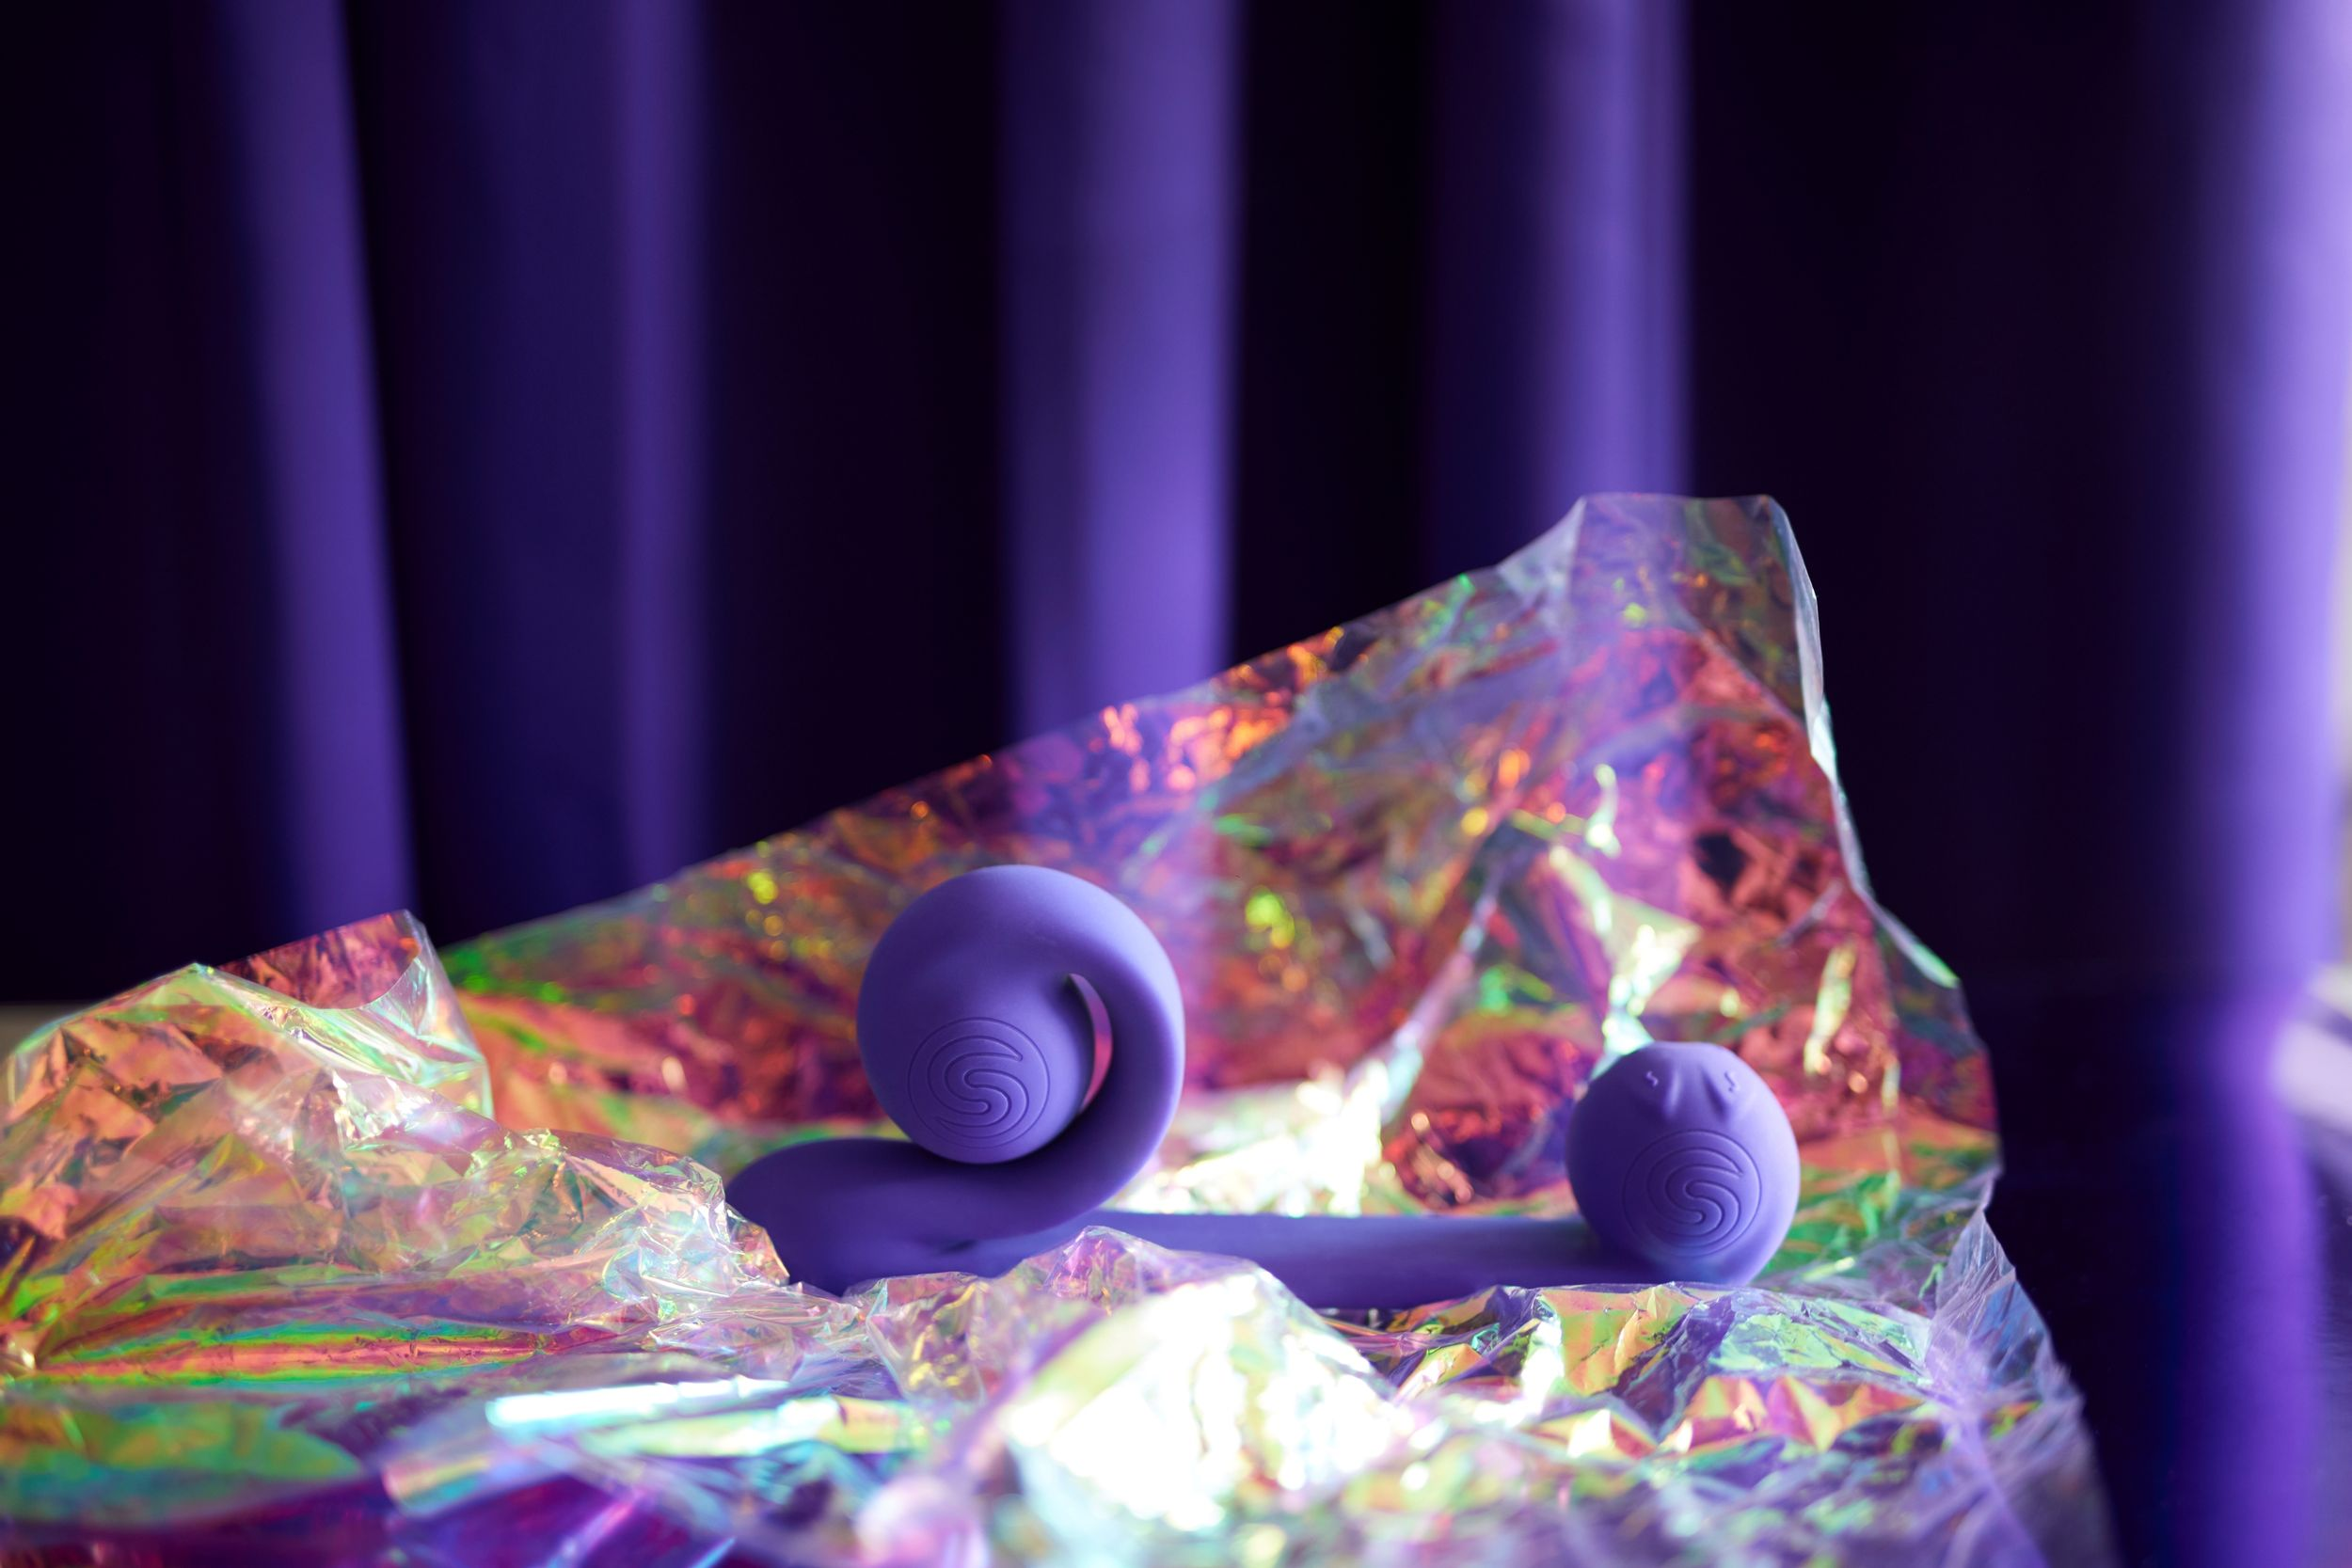 VIBE SNAIL Purple g-punkt-vibratoren